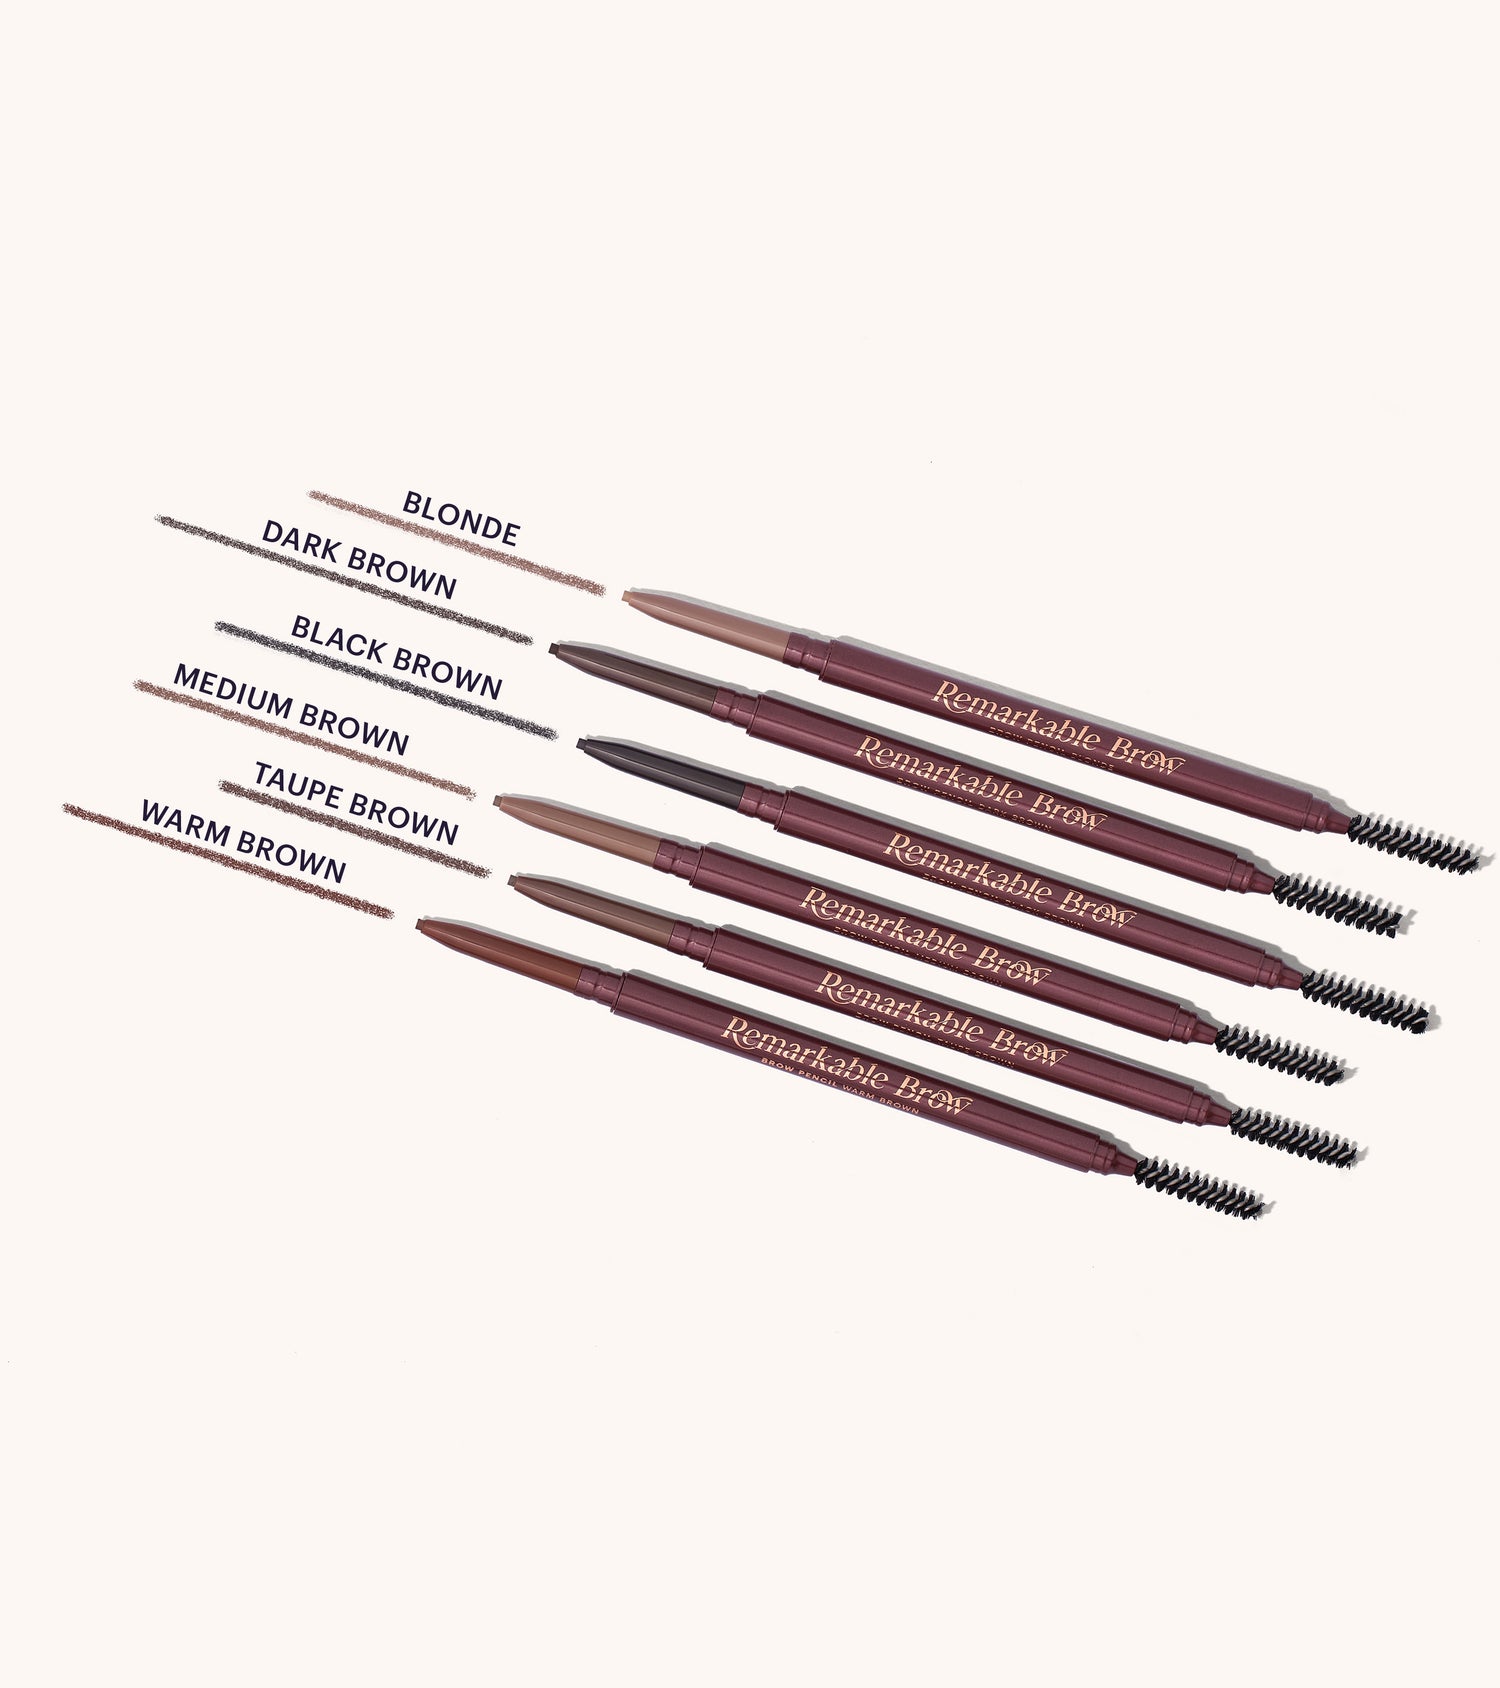 ZOEVA - Remarkable Brow Pencil (Warm Brown) - BROW PENCIL